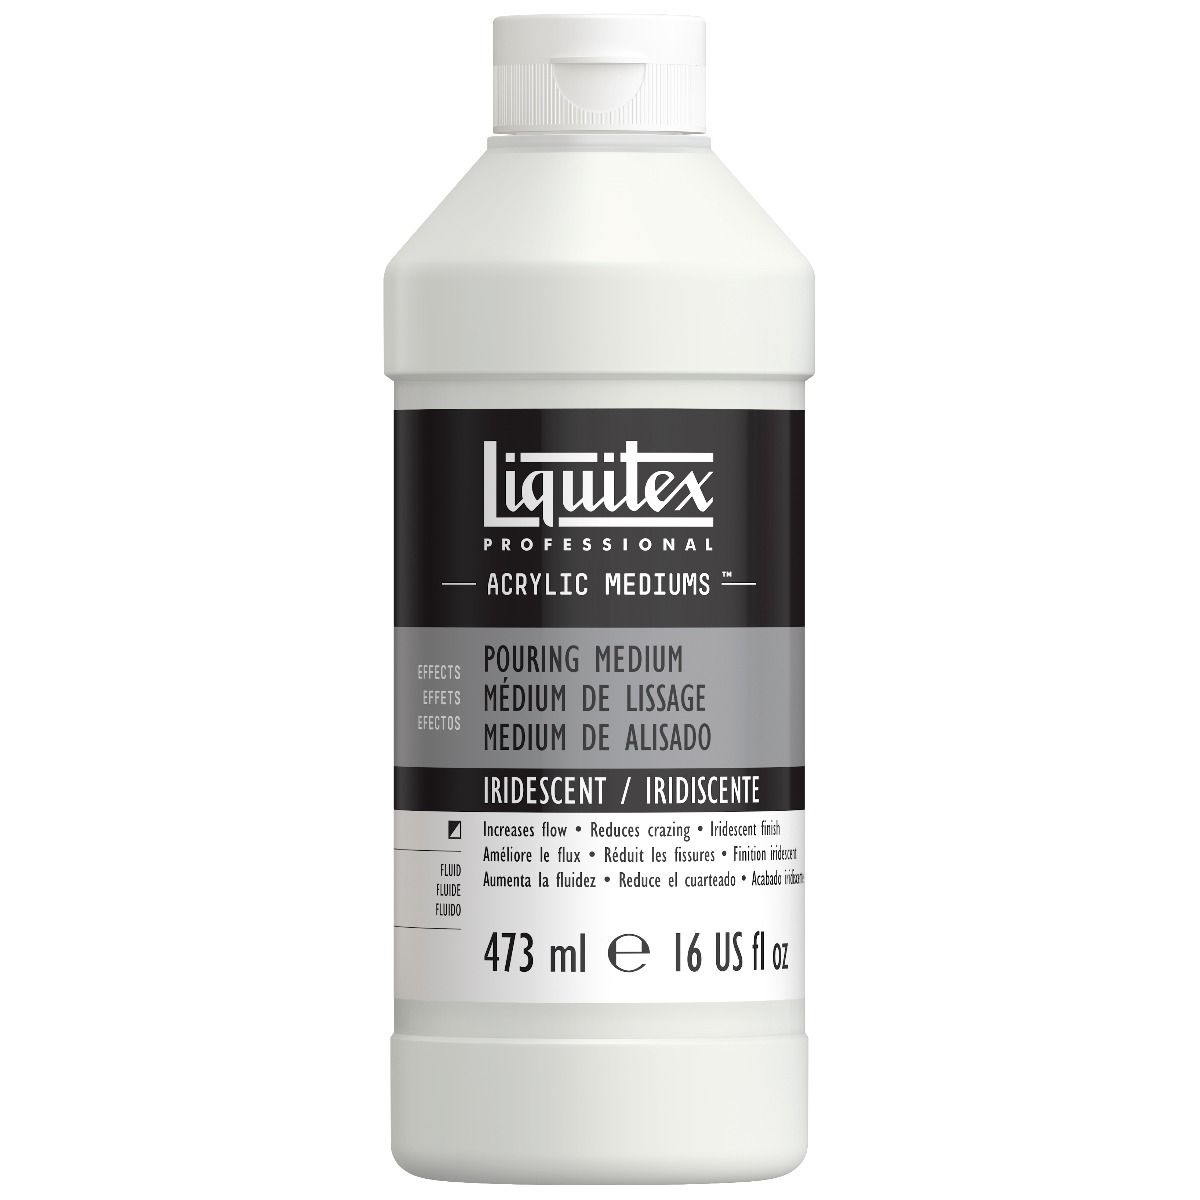 Liquitex Professional Pouring Medium - Iridescent 16oz (473ml)